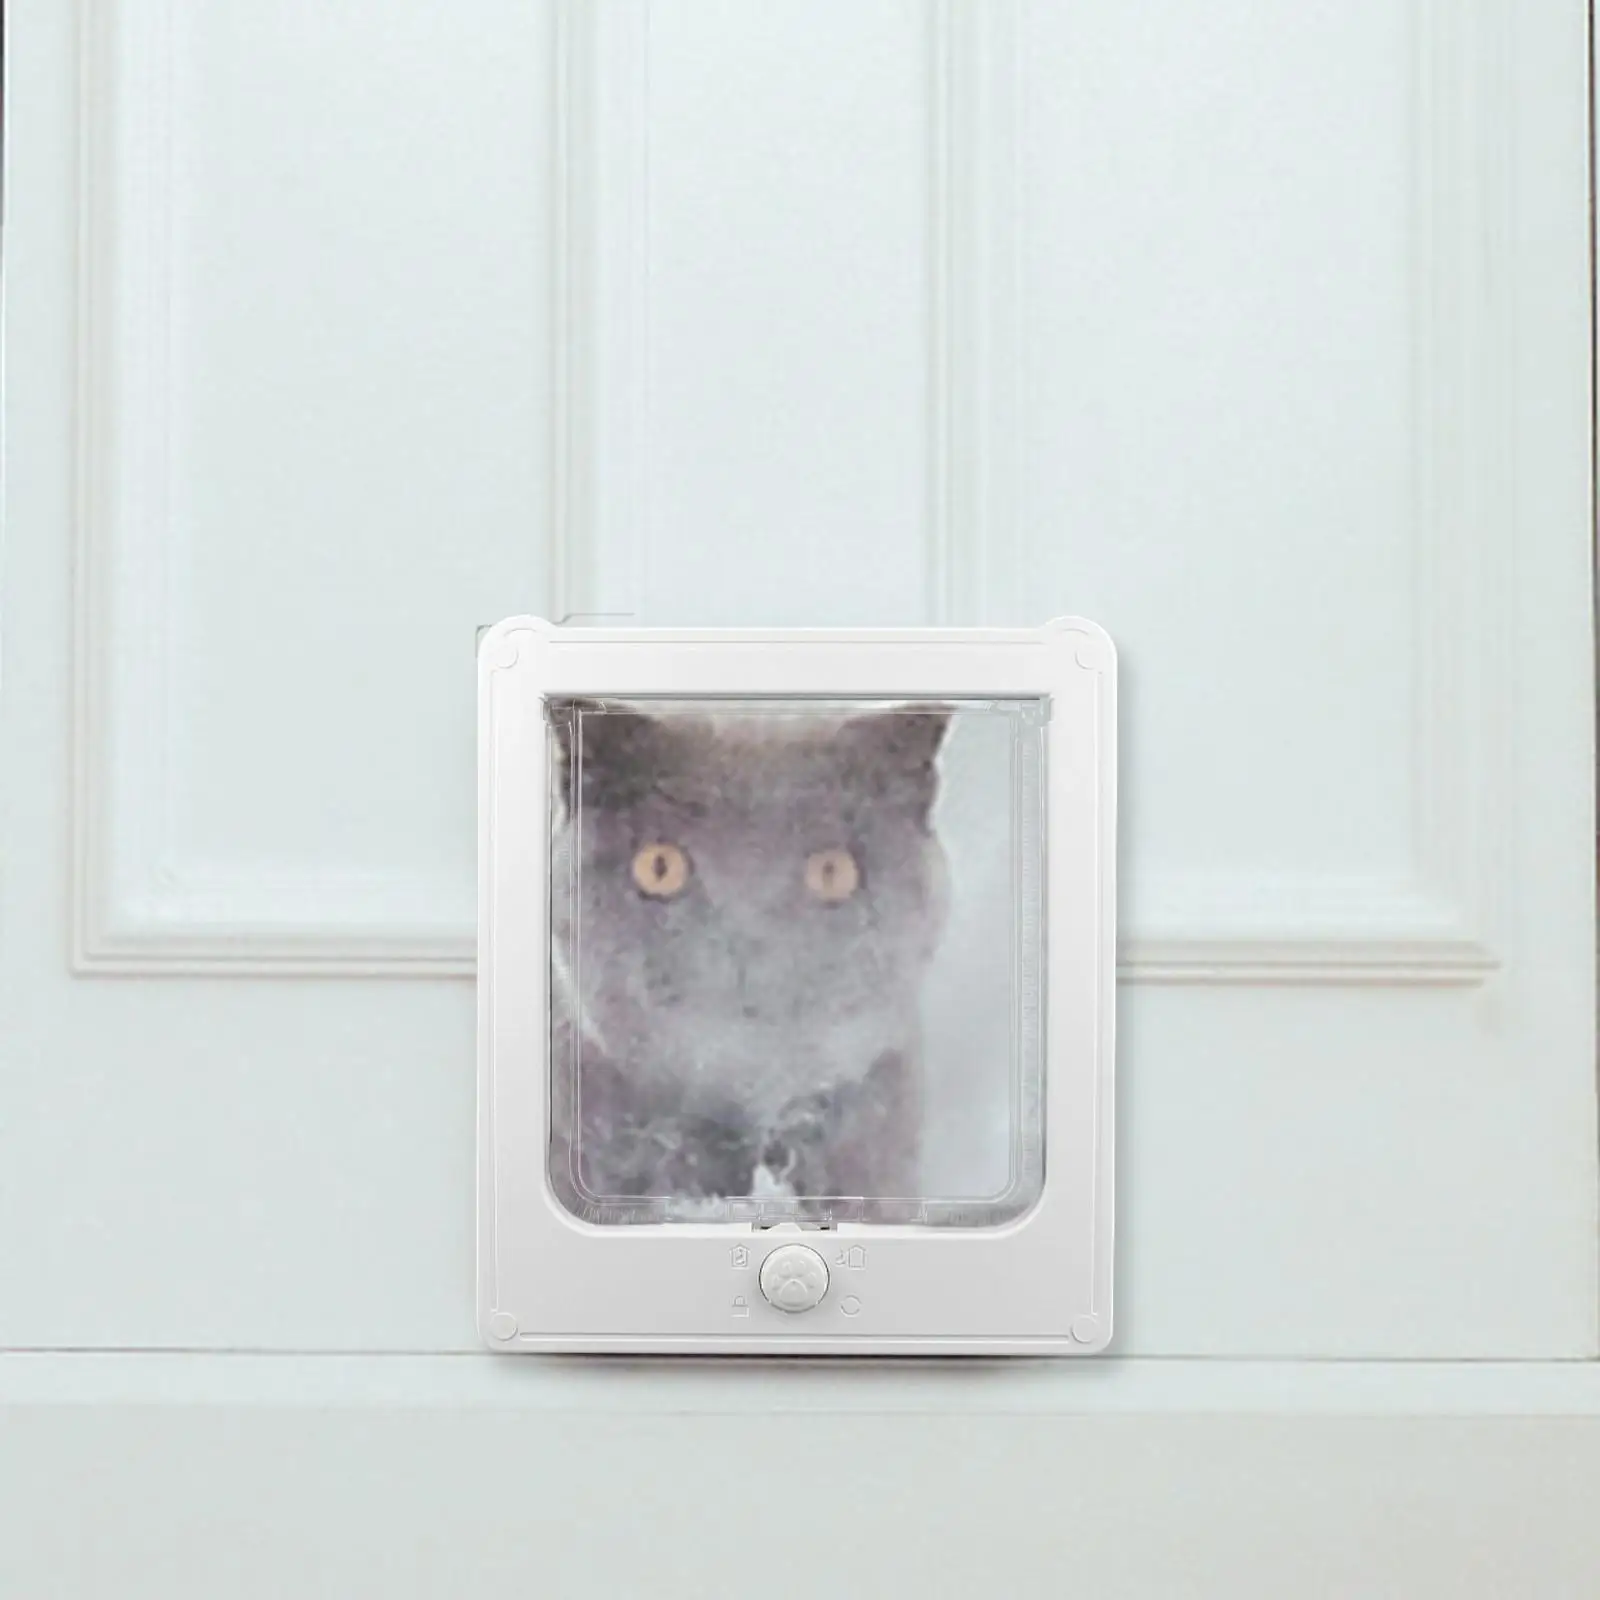 Cat Dogs Flap Doors Quiet Pet Door for Pets Accessories Kitty Small Animal